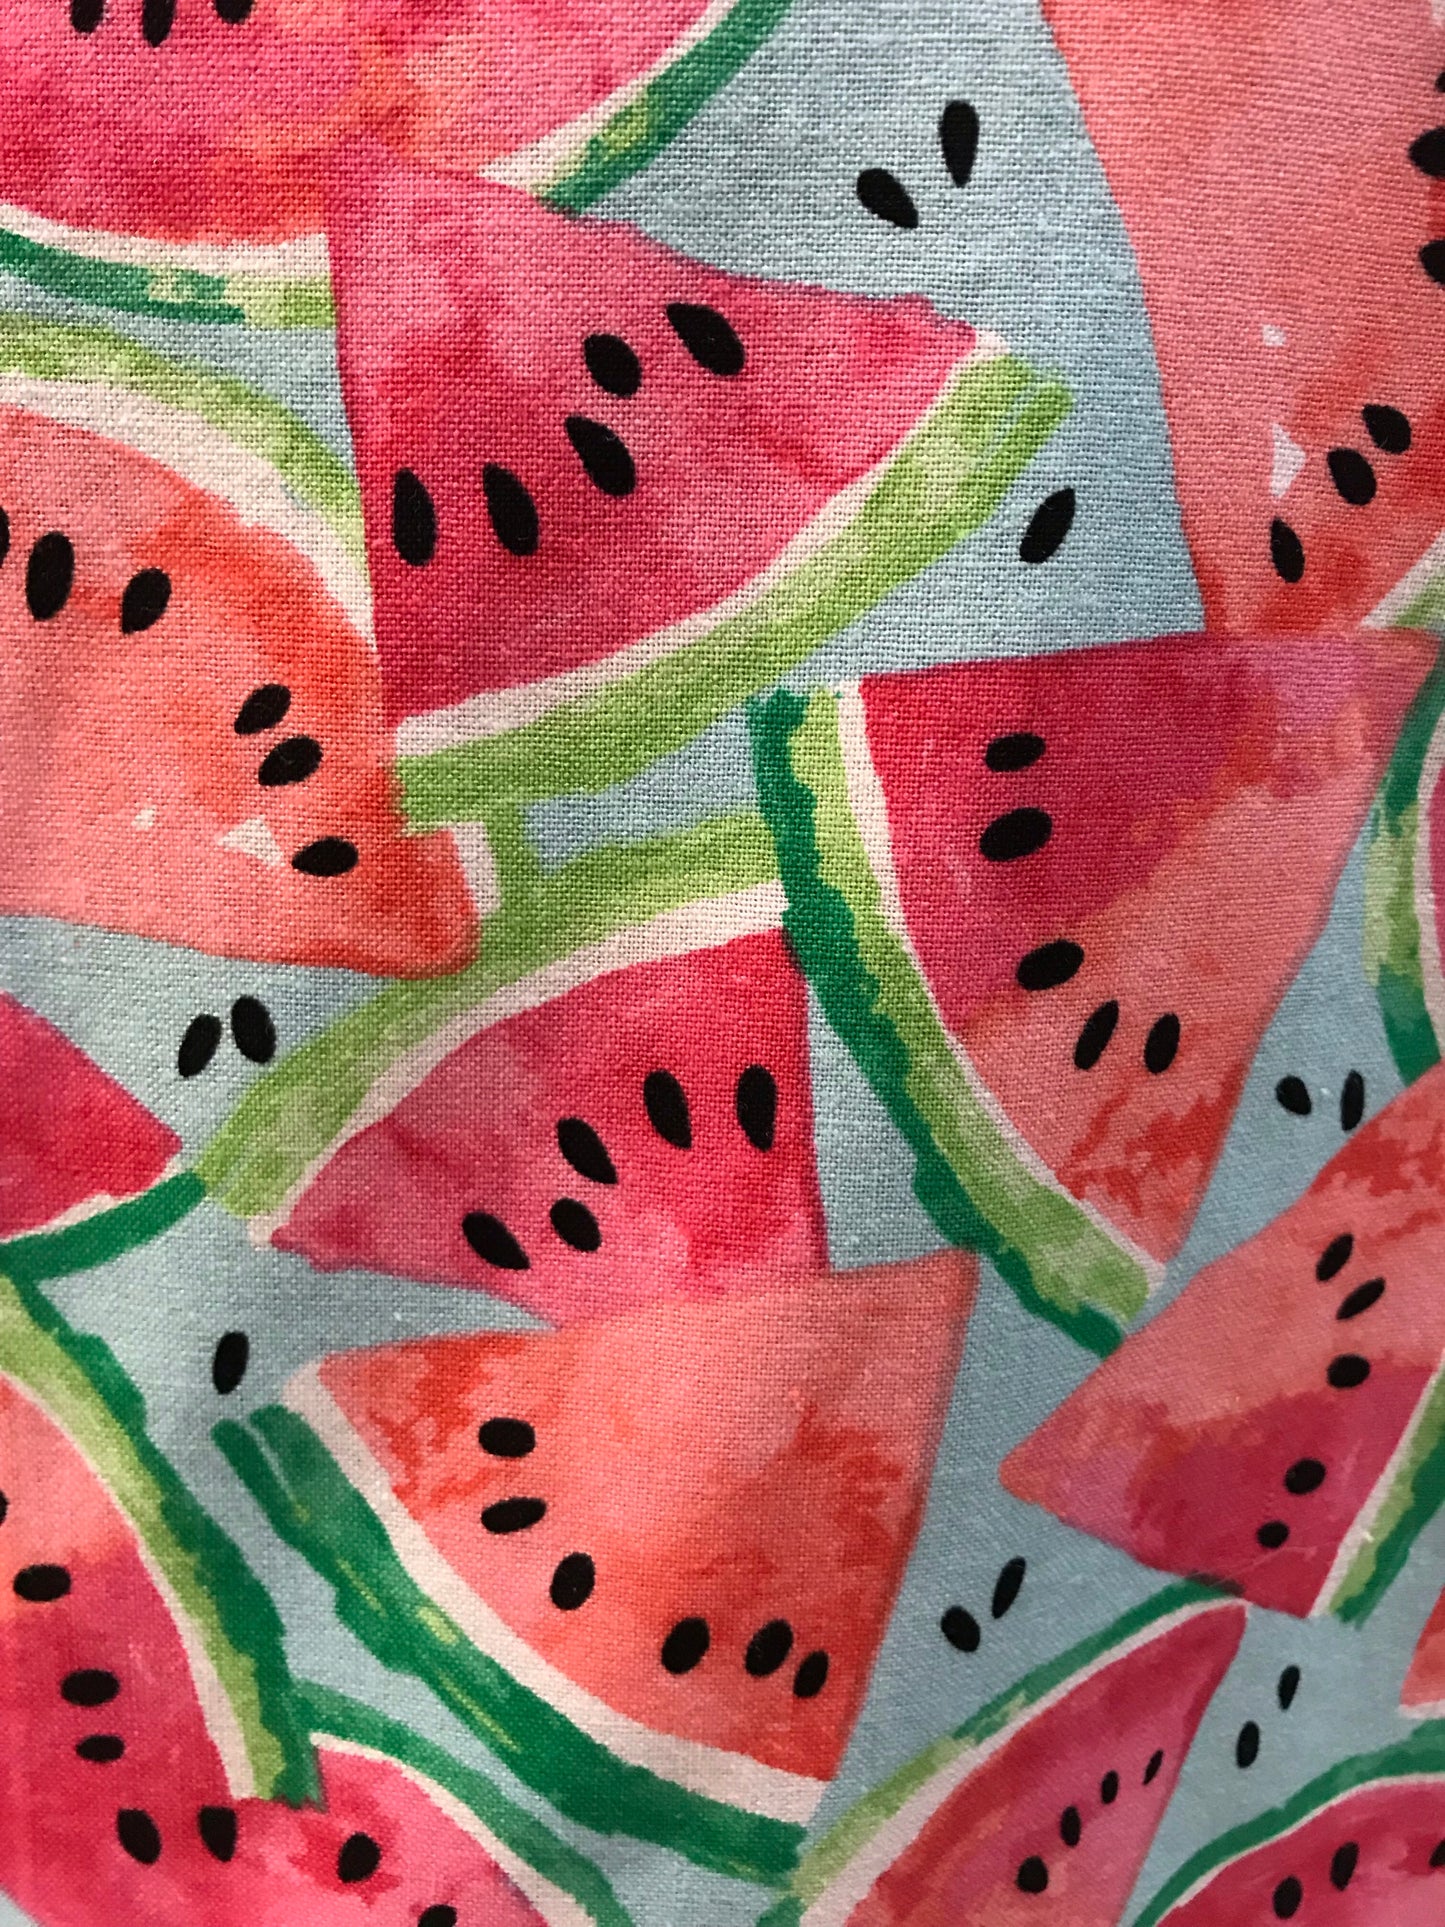 Watermelon Apron - InRugCo Studio & Gift Shop